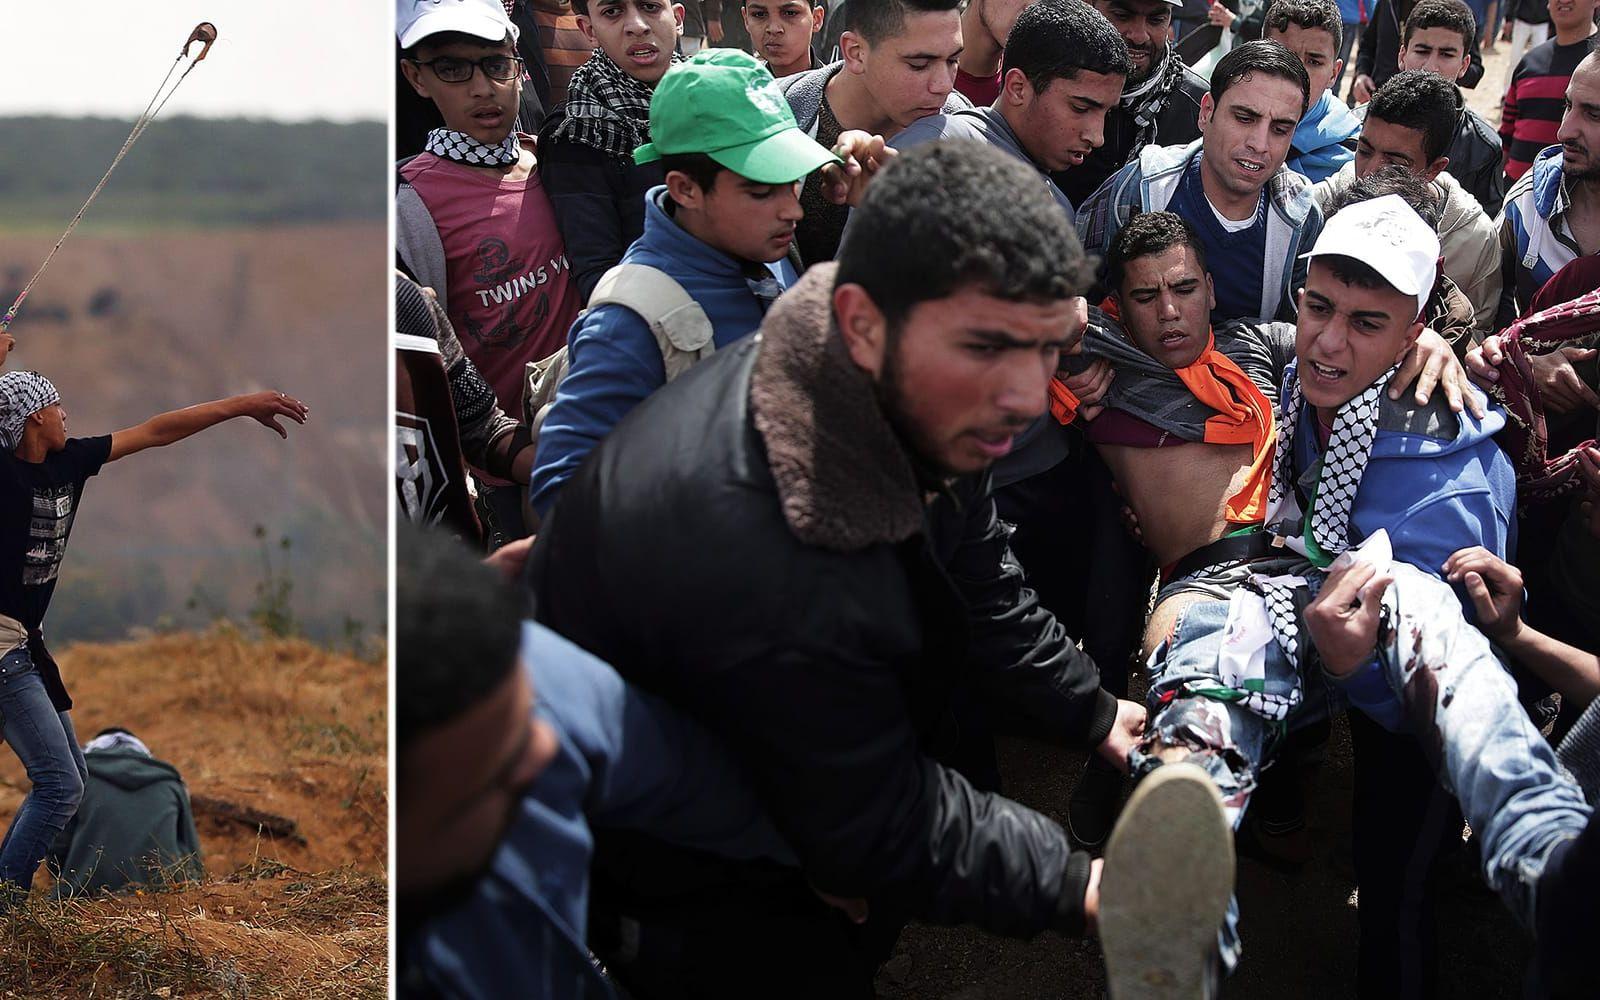 Oroligheter har utbrutit i samdand med en stor demonstration i Gaza, nära den israeliska grängsen. Flera har dödats. FOTO: AP
